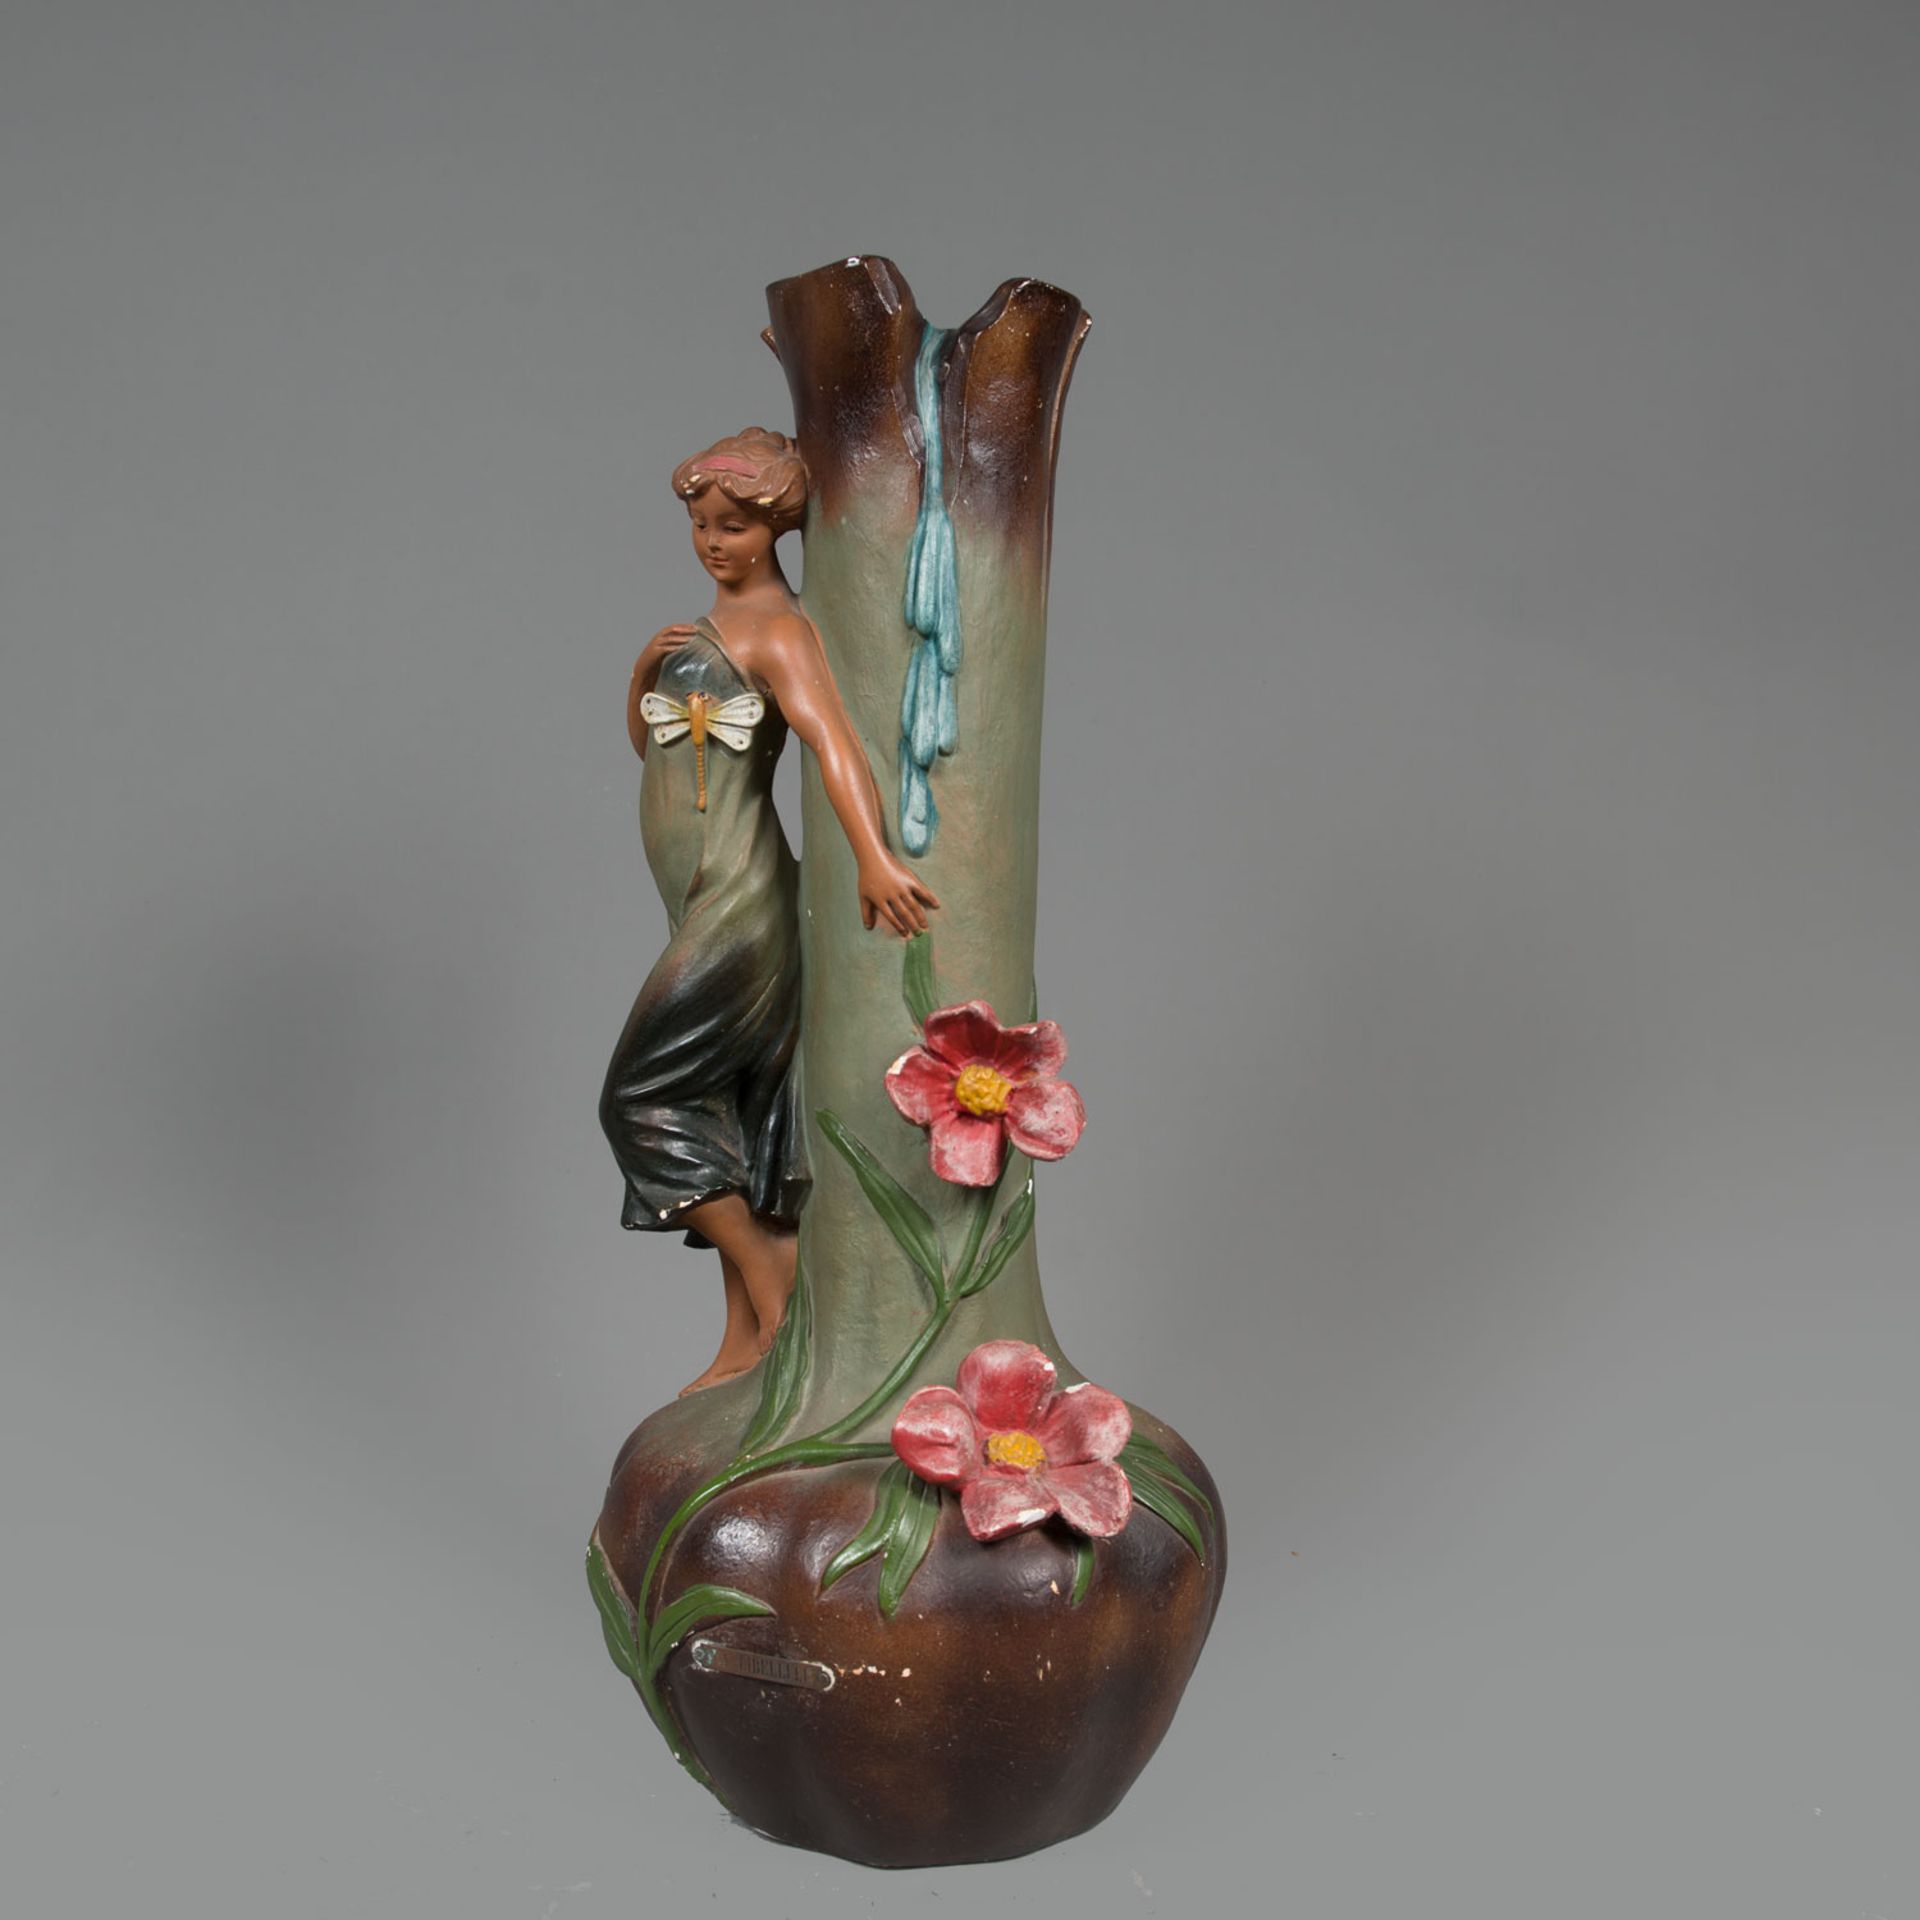 Pair of Jugendstil Vases - Image 3 of 3